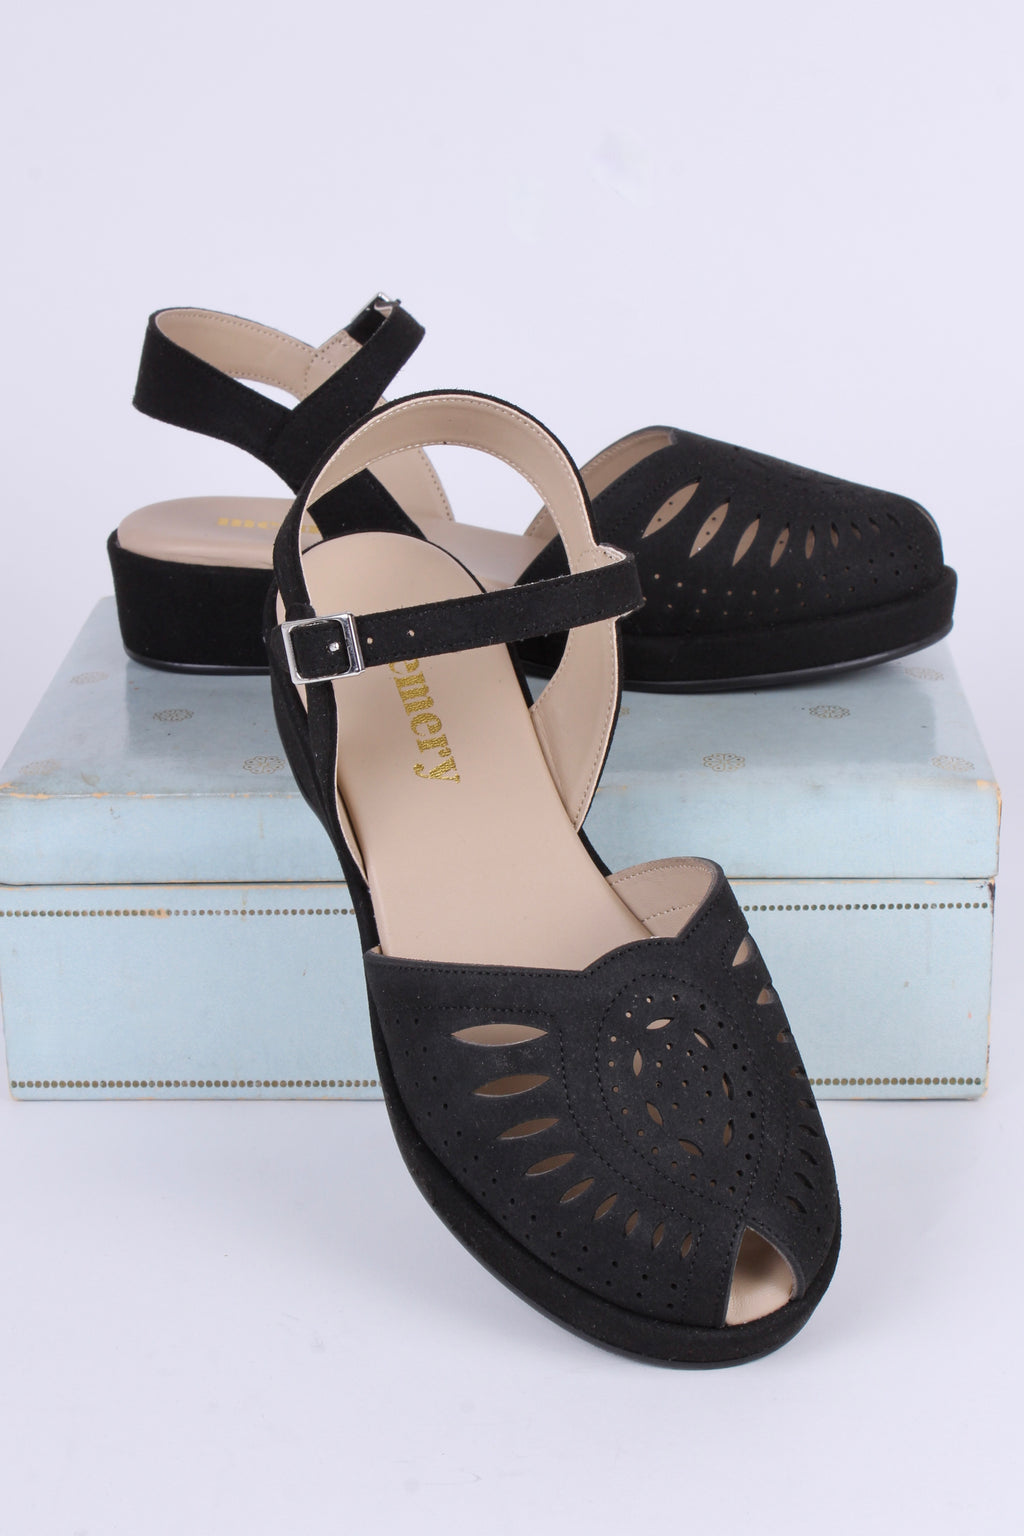 VEGAN - Bløde 1940'er / 1950'er inspirerede sandaler - Sort - Ella